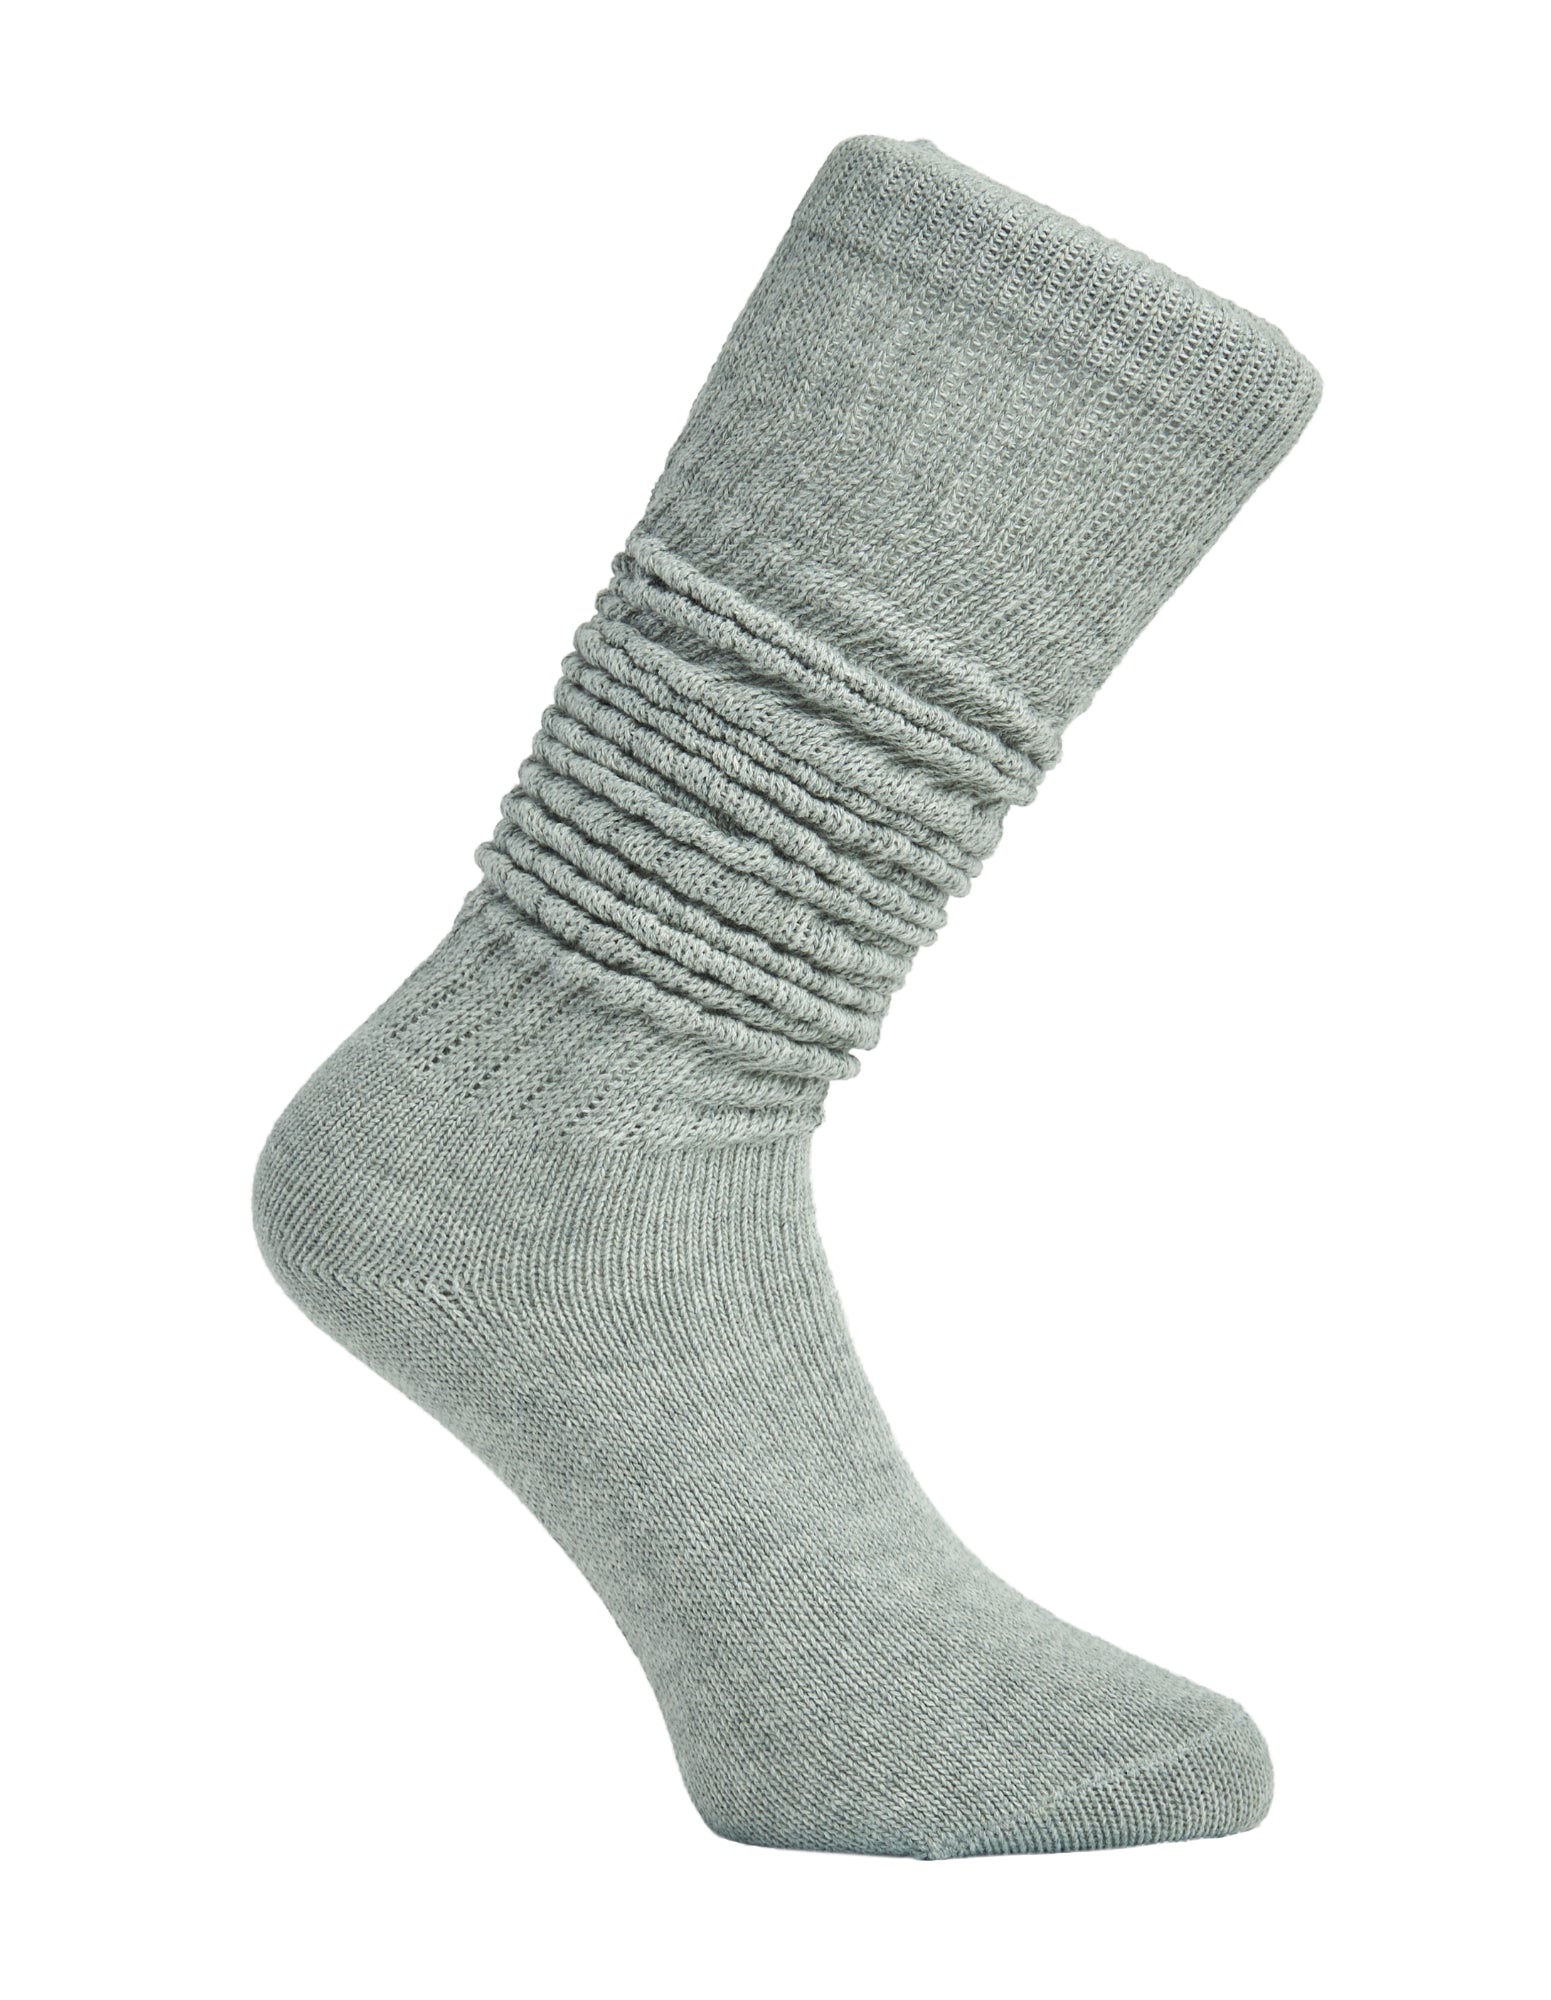 Simon de Winter Women's Grey Slouch Socks